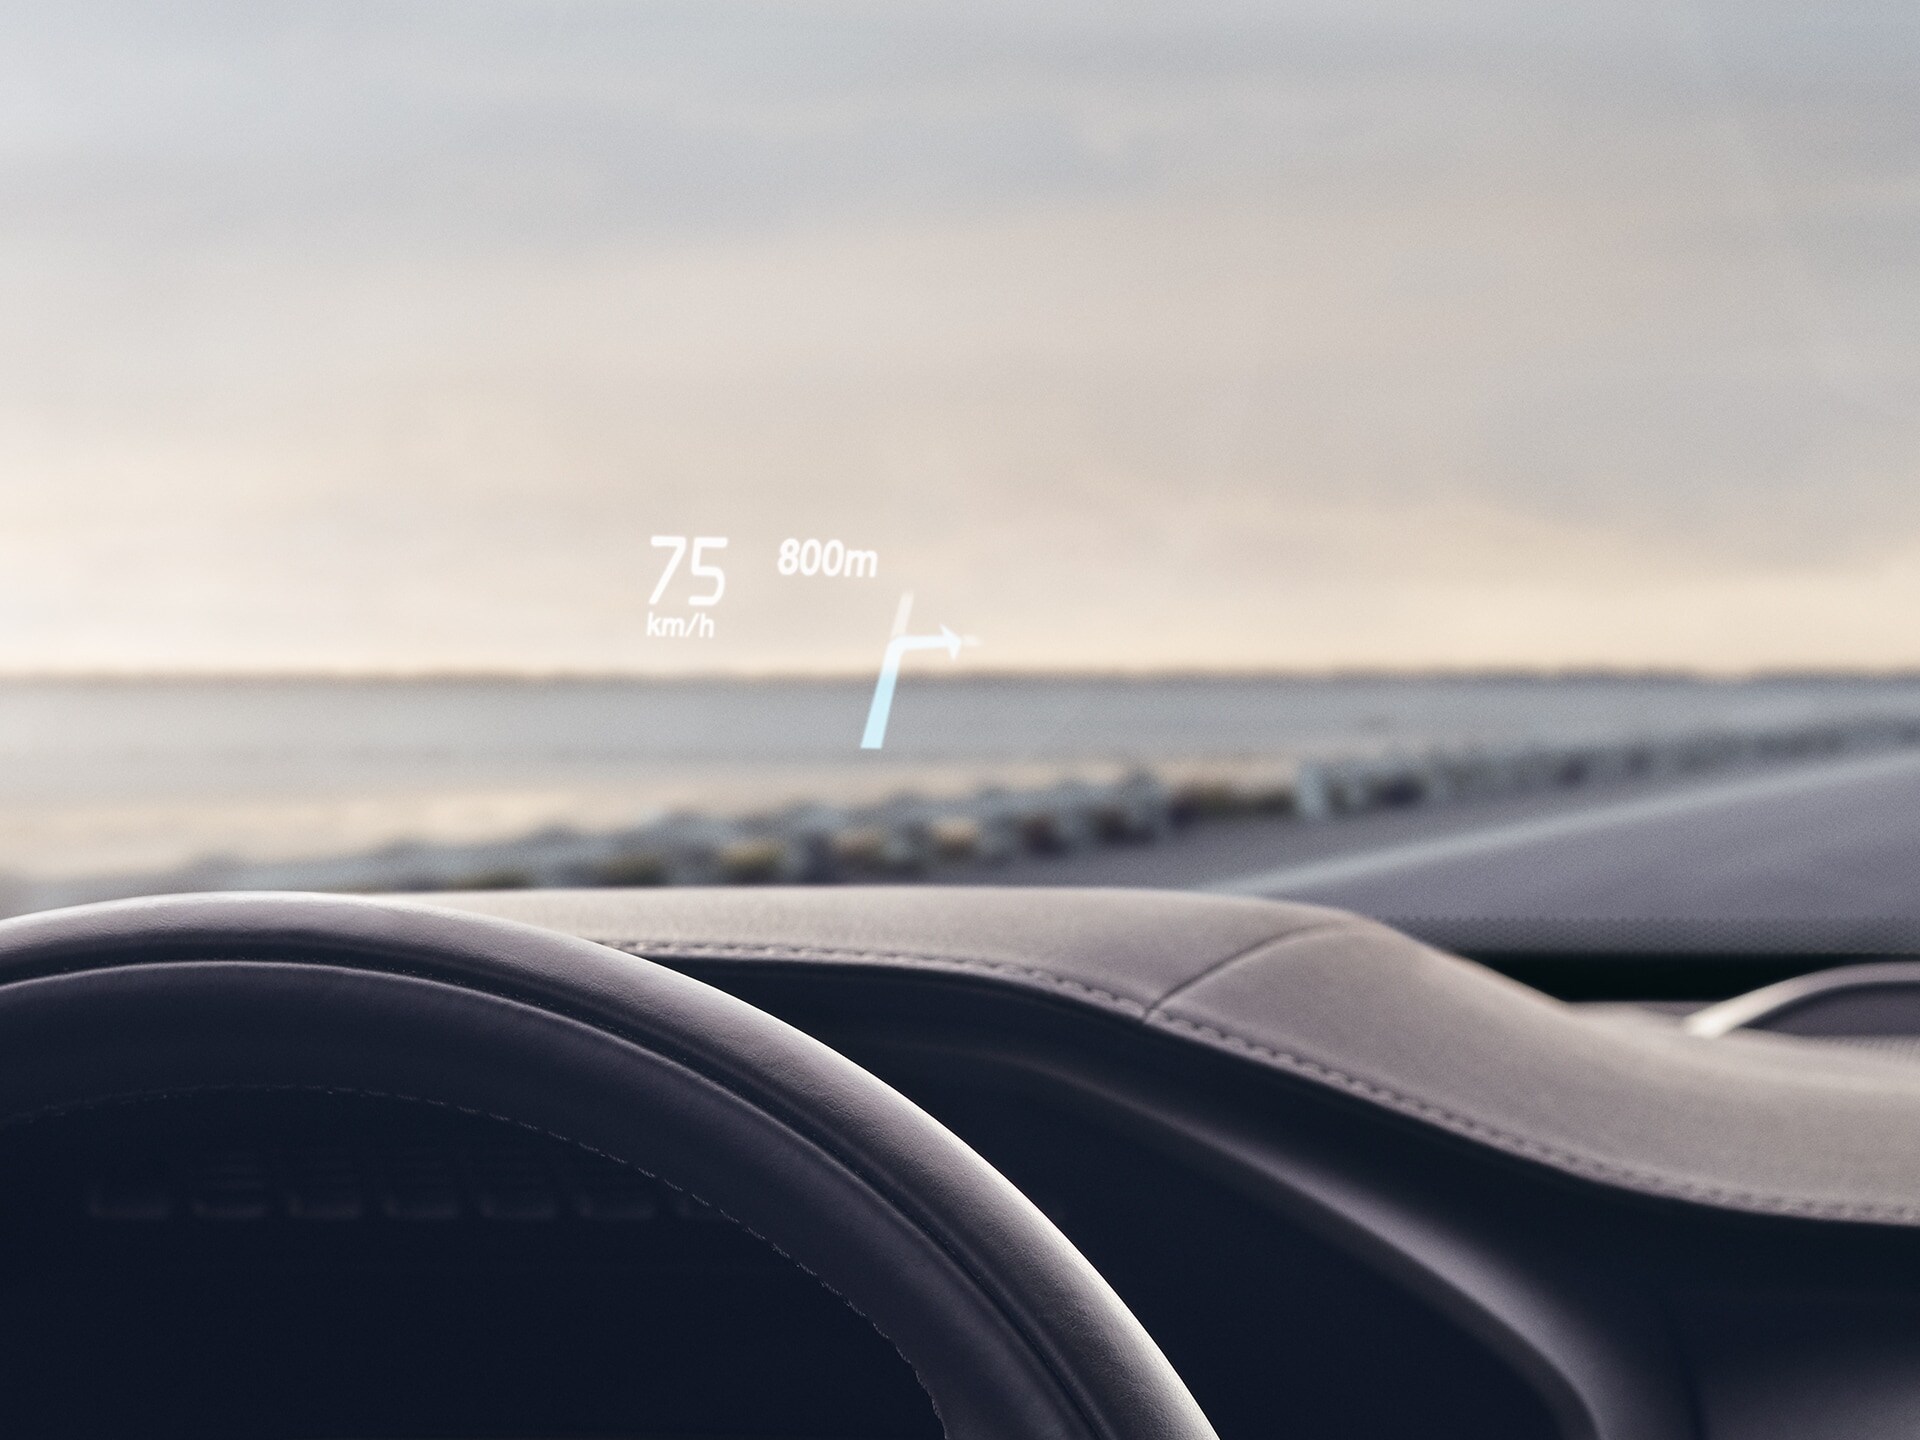 داخل سيارة فولفو، توجد شاشة عرض رأسية تظهر سرعة القيادة والملاحة على الزجاج الأمامي.